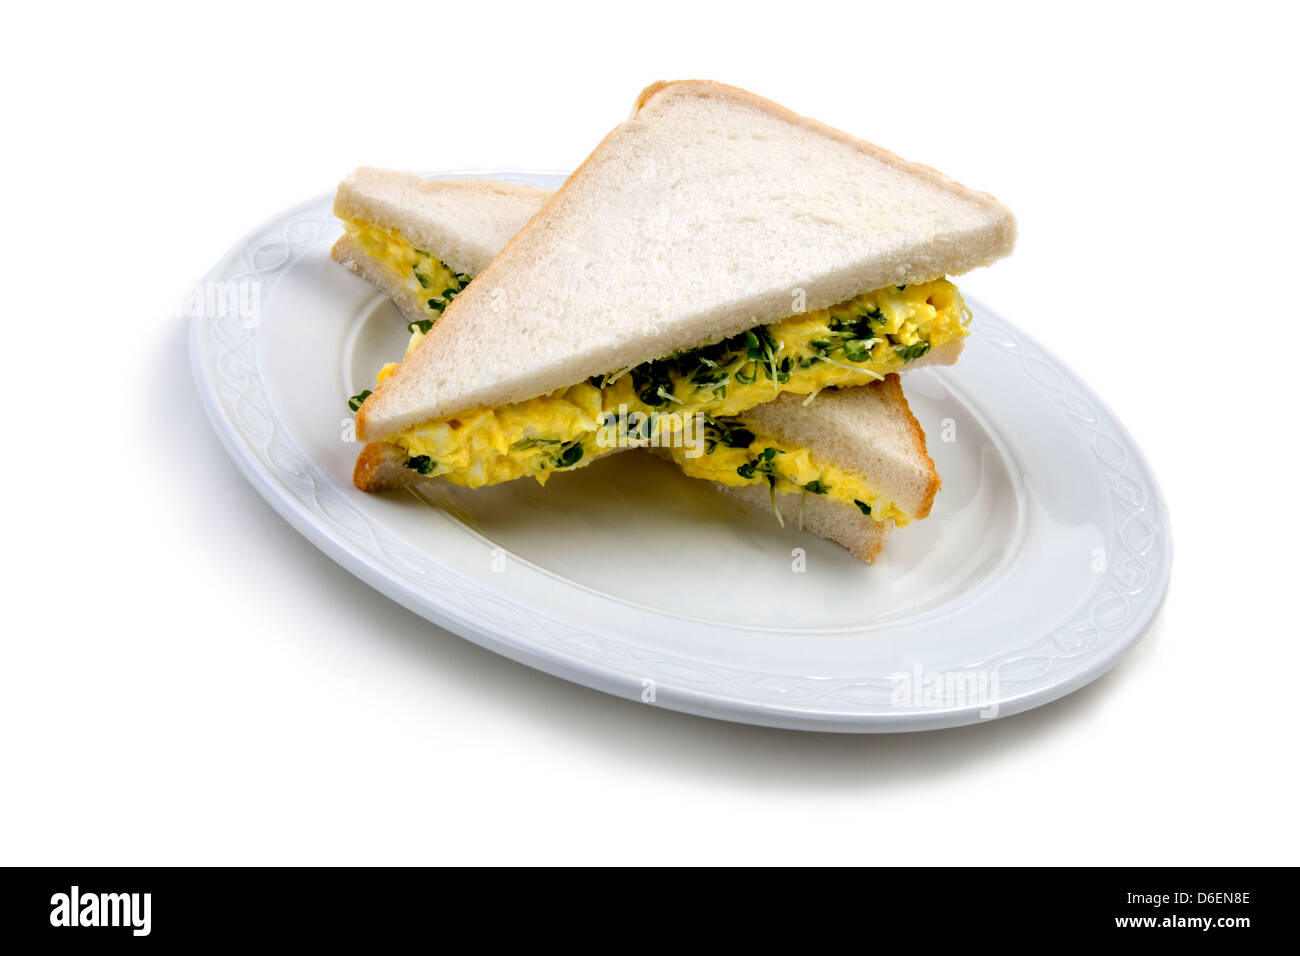 Cress white bread sandwich Stock Photo